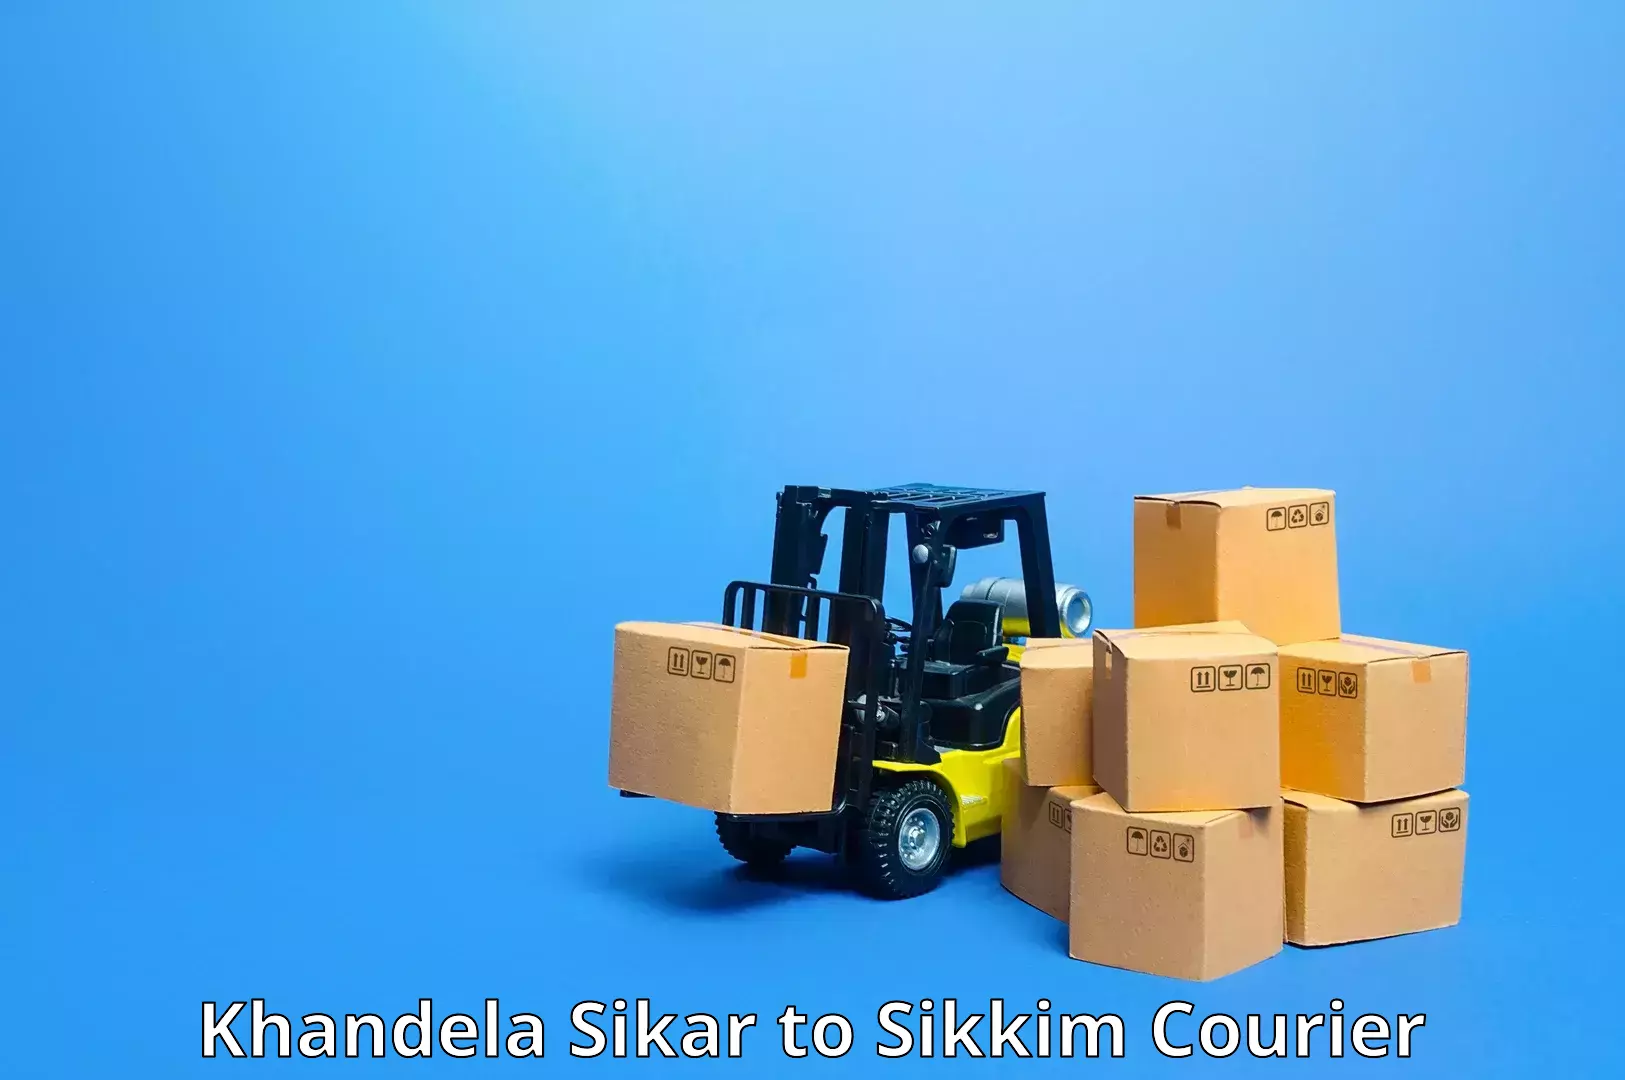 Parcel delivery Khandela Sikar to Jorethang